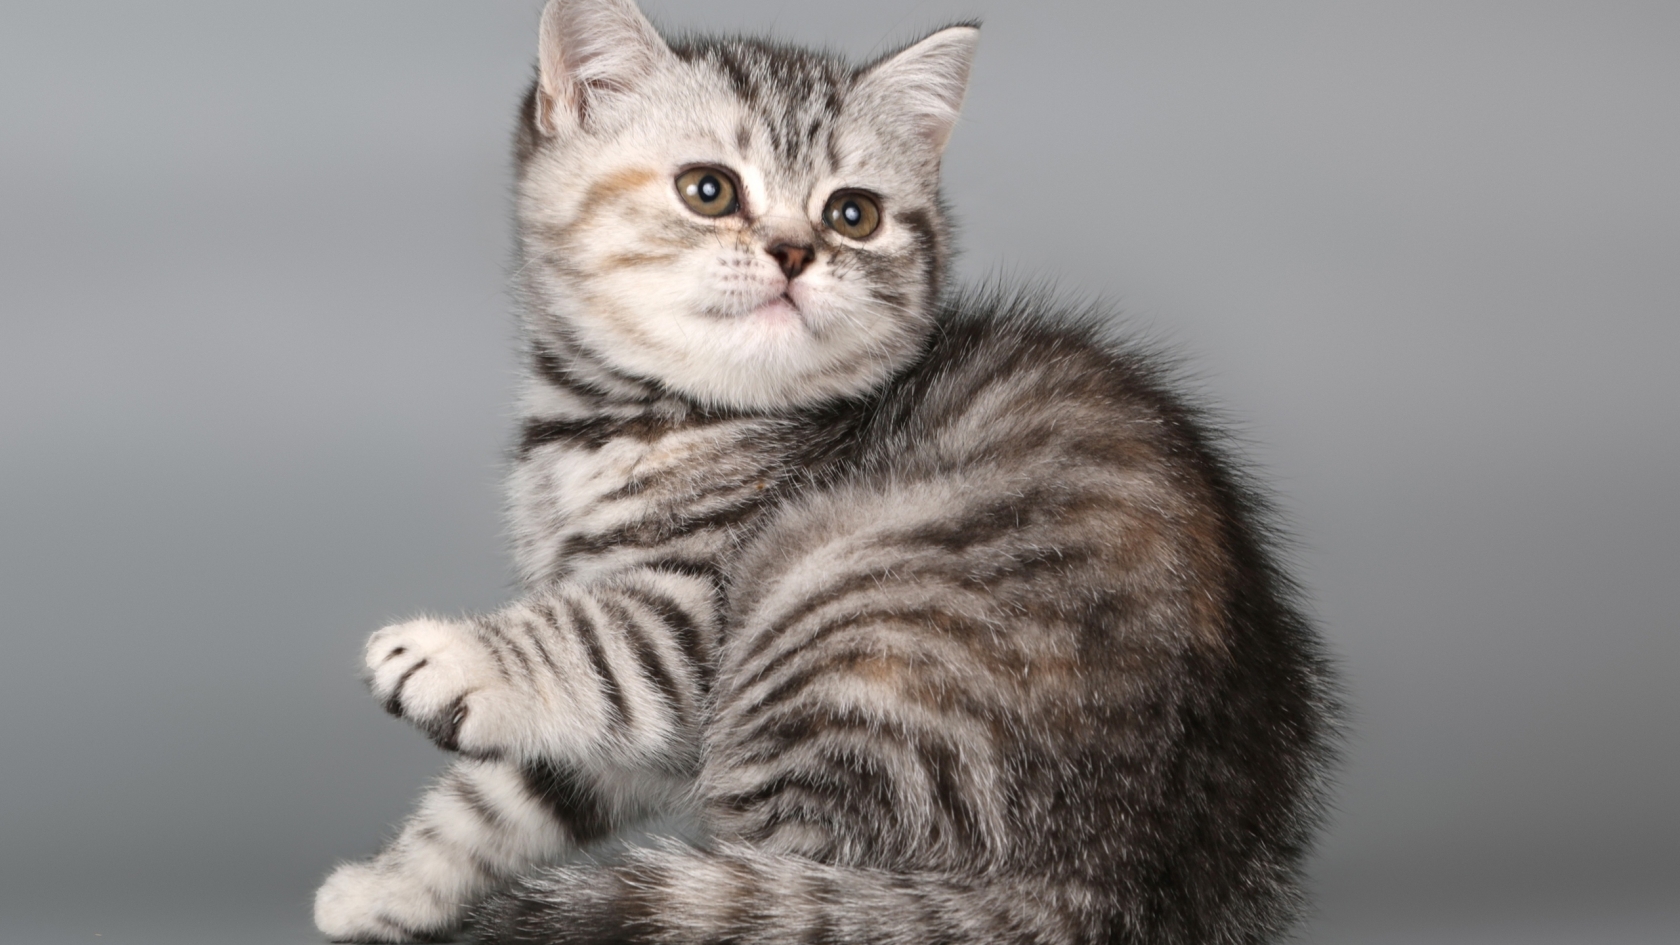 British Shorthair Kitten for 1680 x 945 HDTV resolution